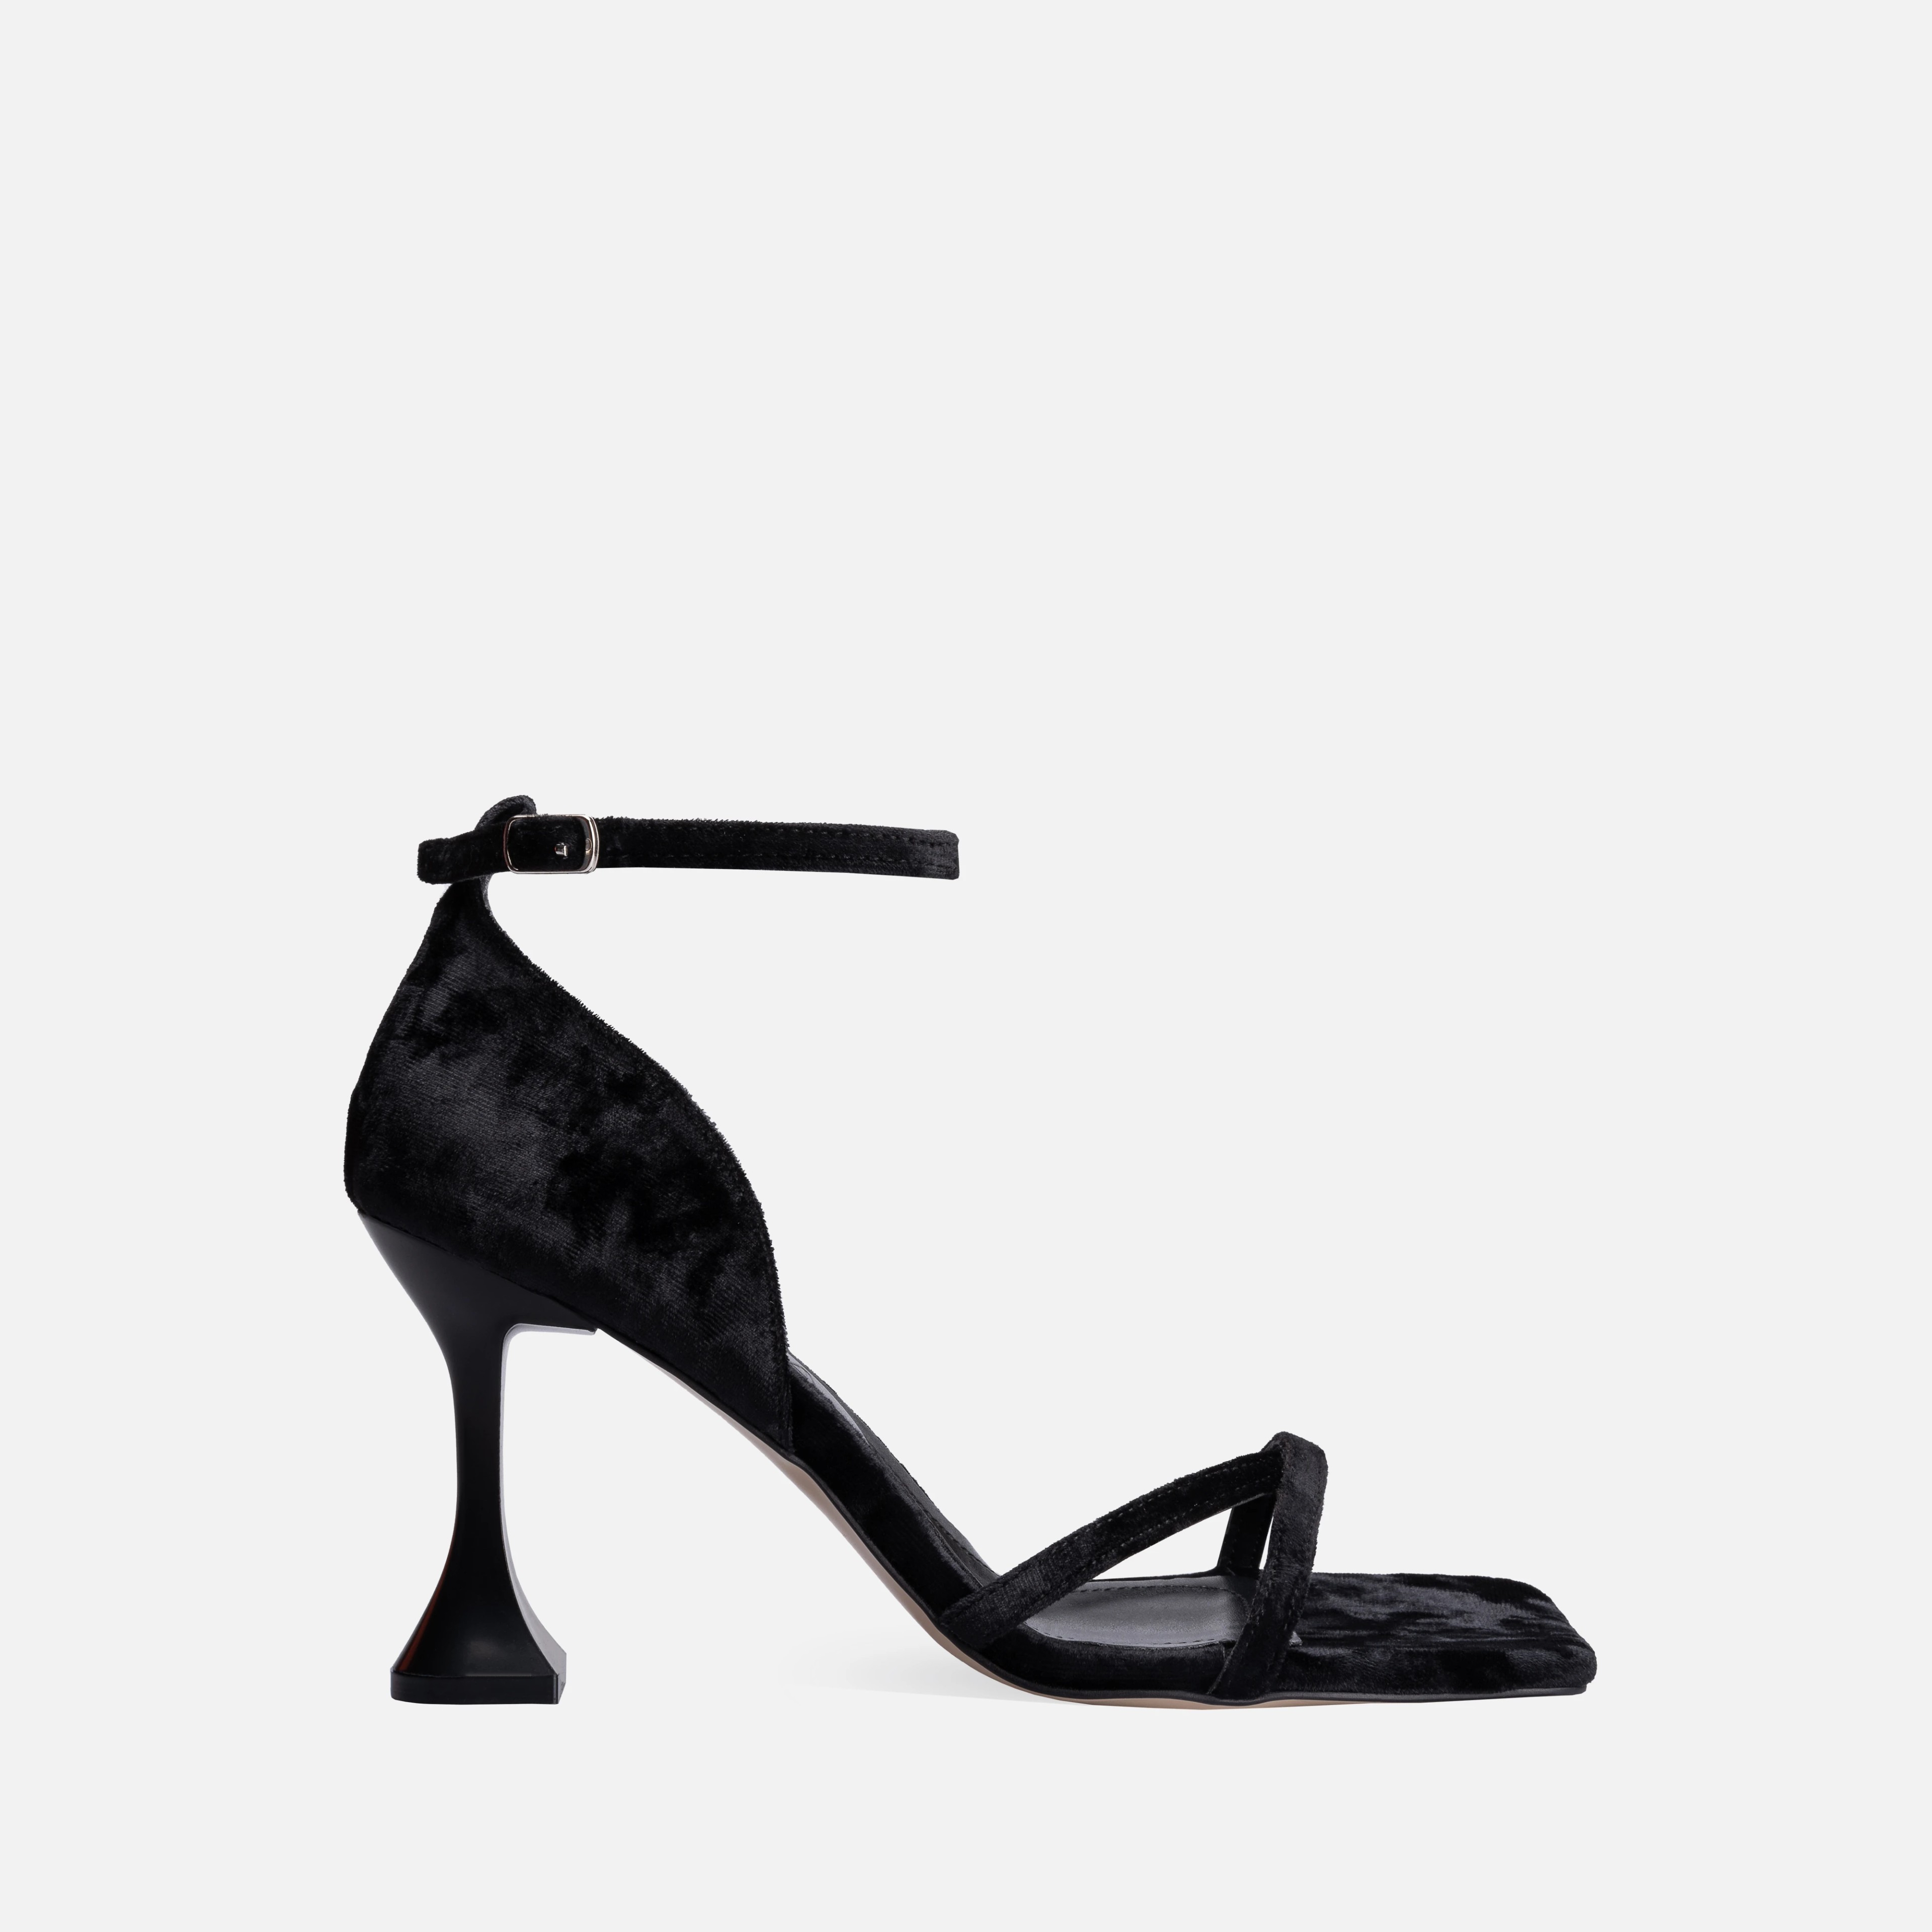 Velvet Thin High-Heeled Shoes - Black